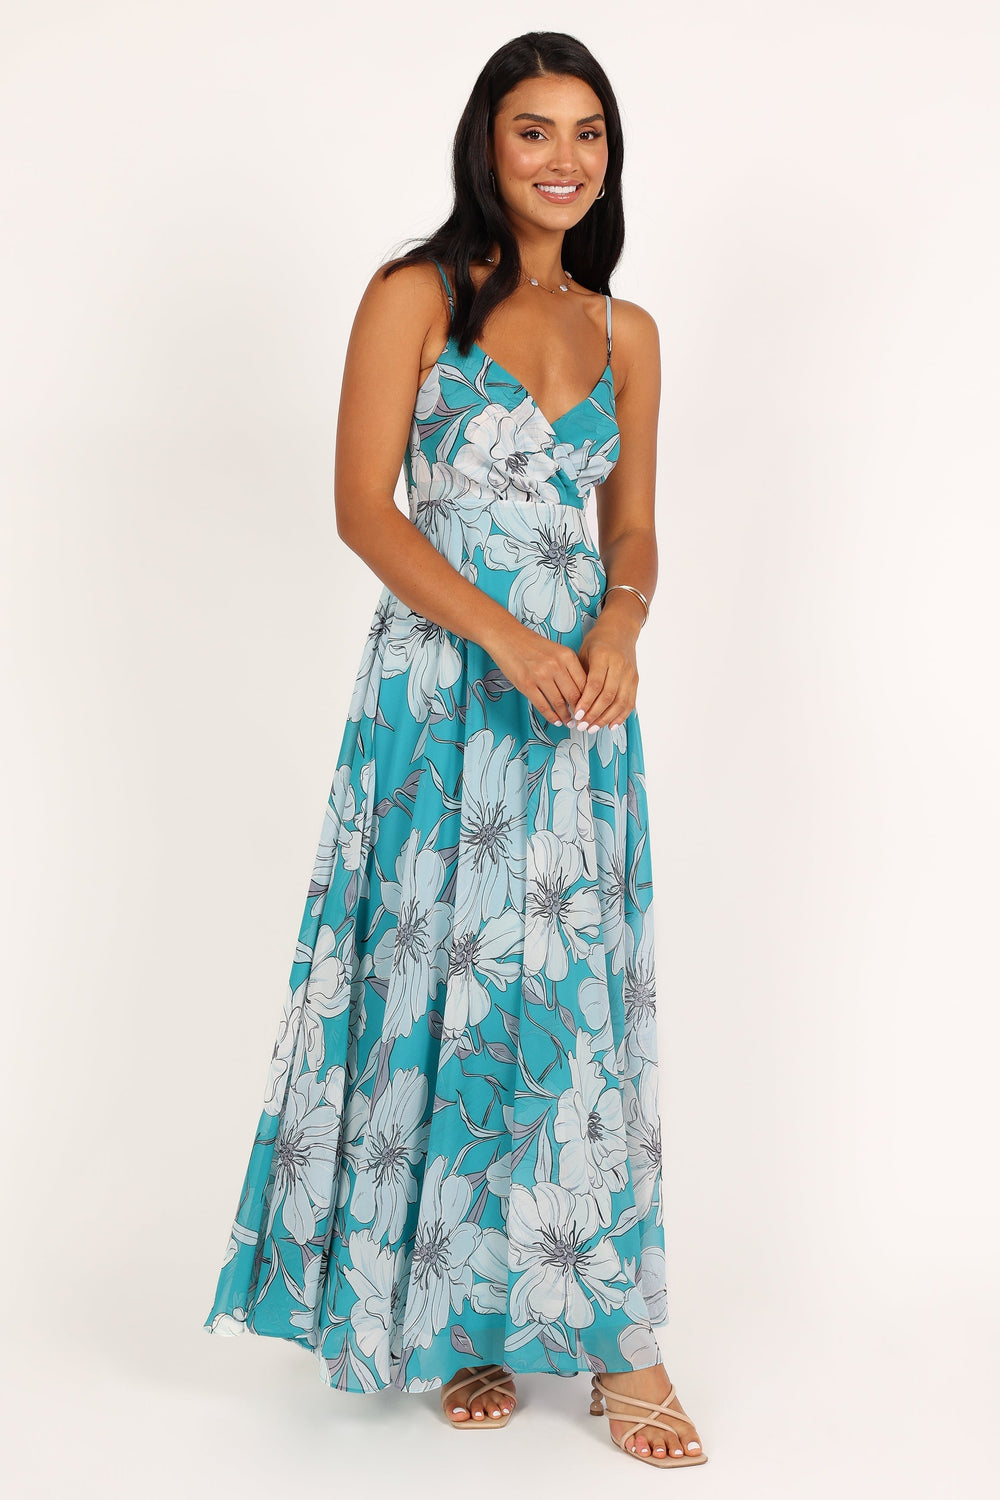 Flourish Maxi Dress - Blue Floral - Petal & Pup USA